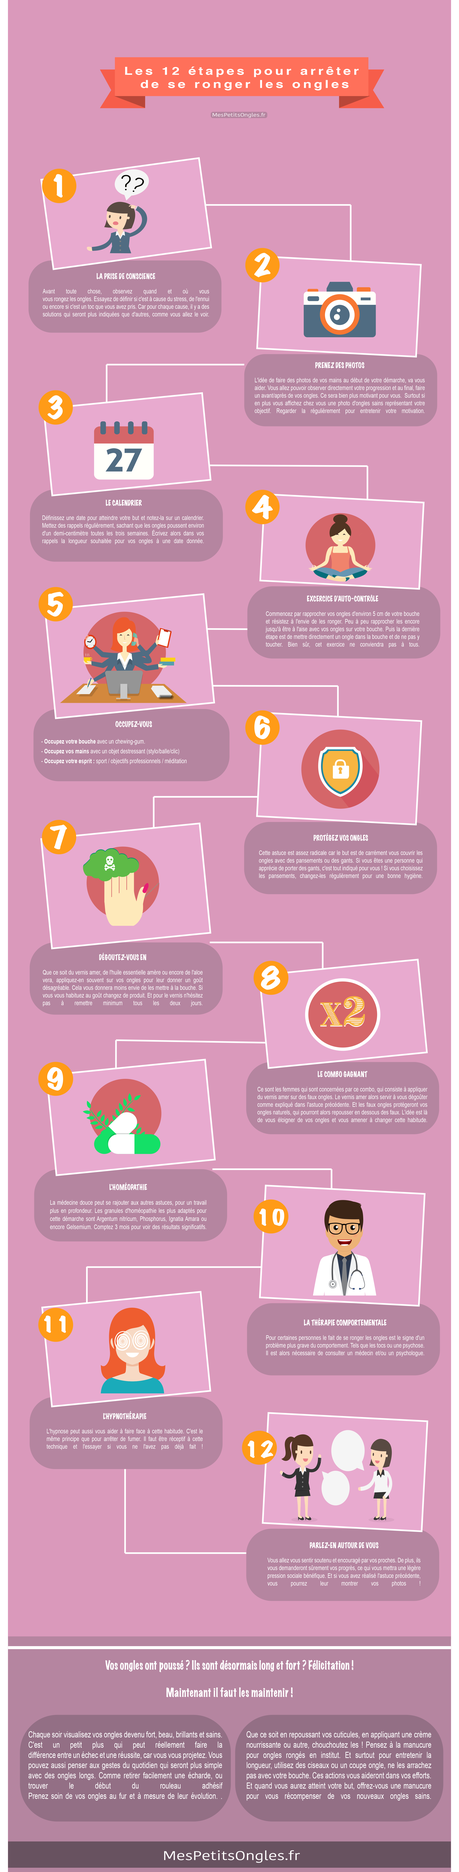 [ infographie ]  Les 12 étapes pour arrêter de se ronger les ongles